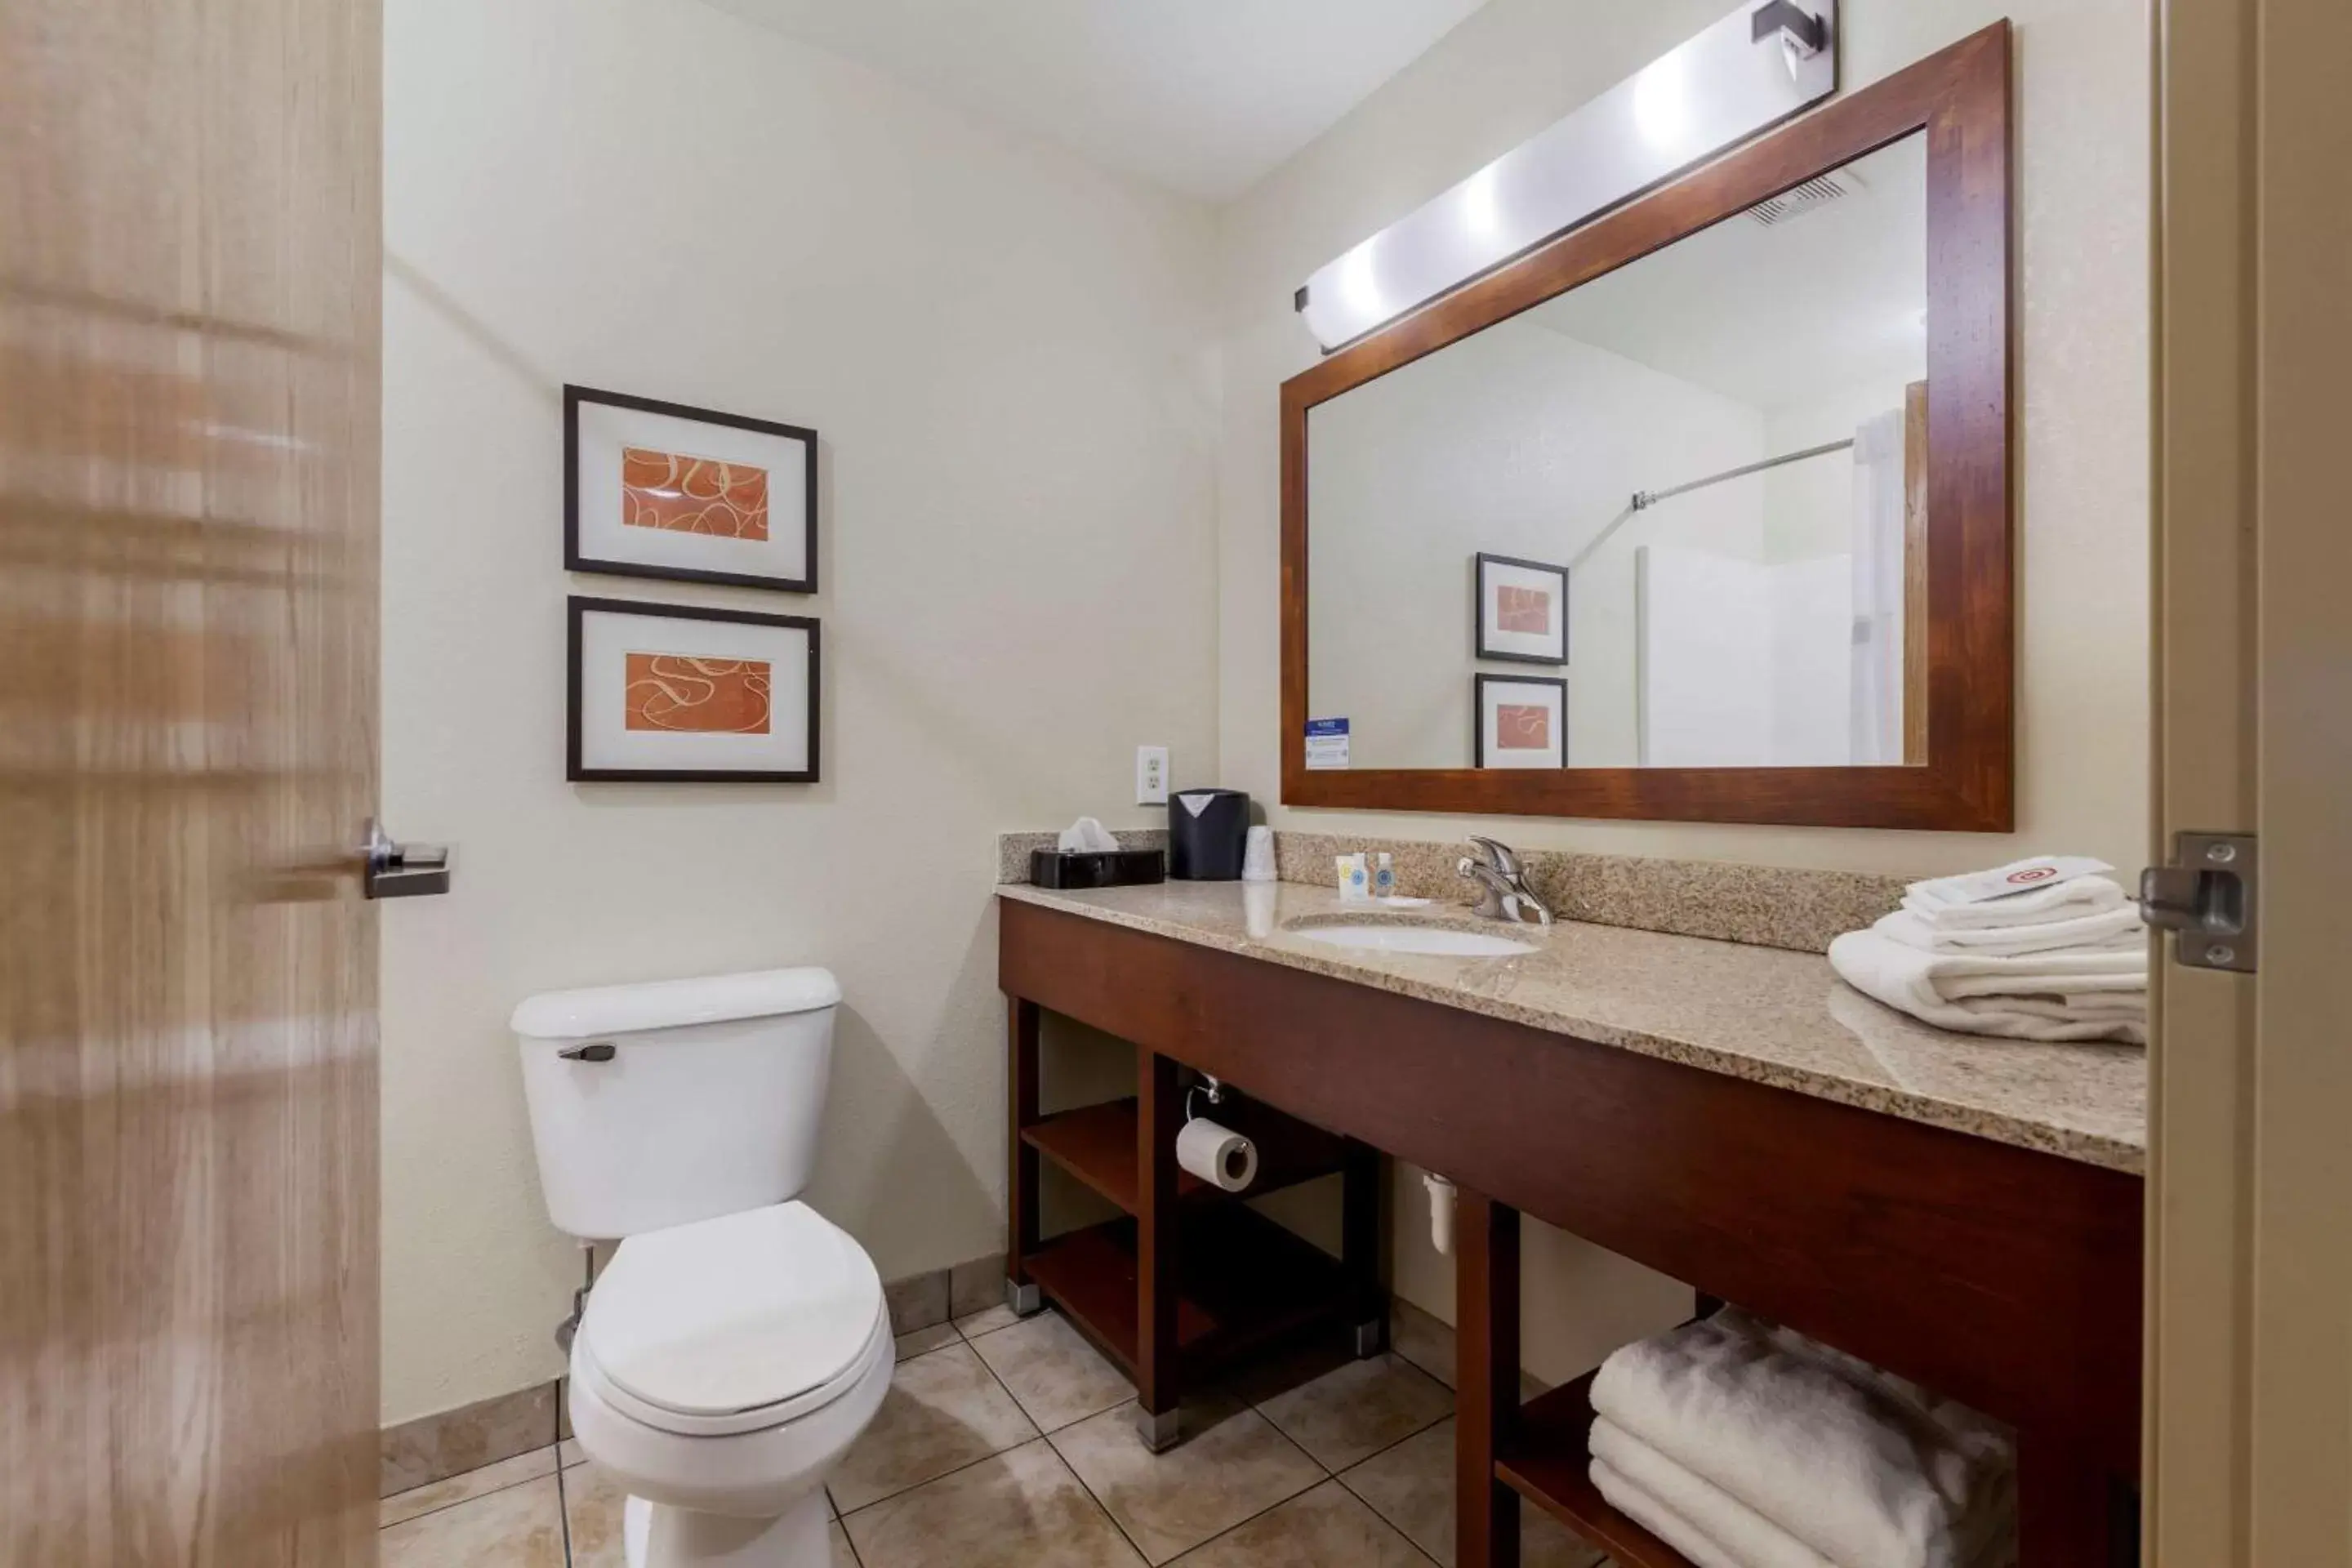 Bedroom, Bathroom in Comfort Suites Johnson Creek Conference